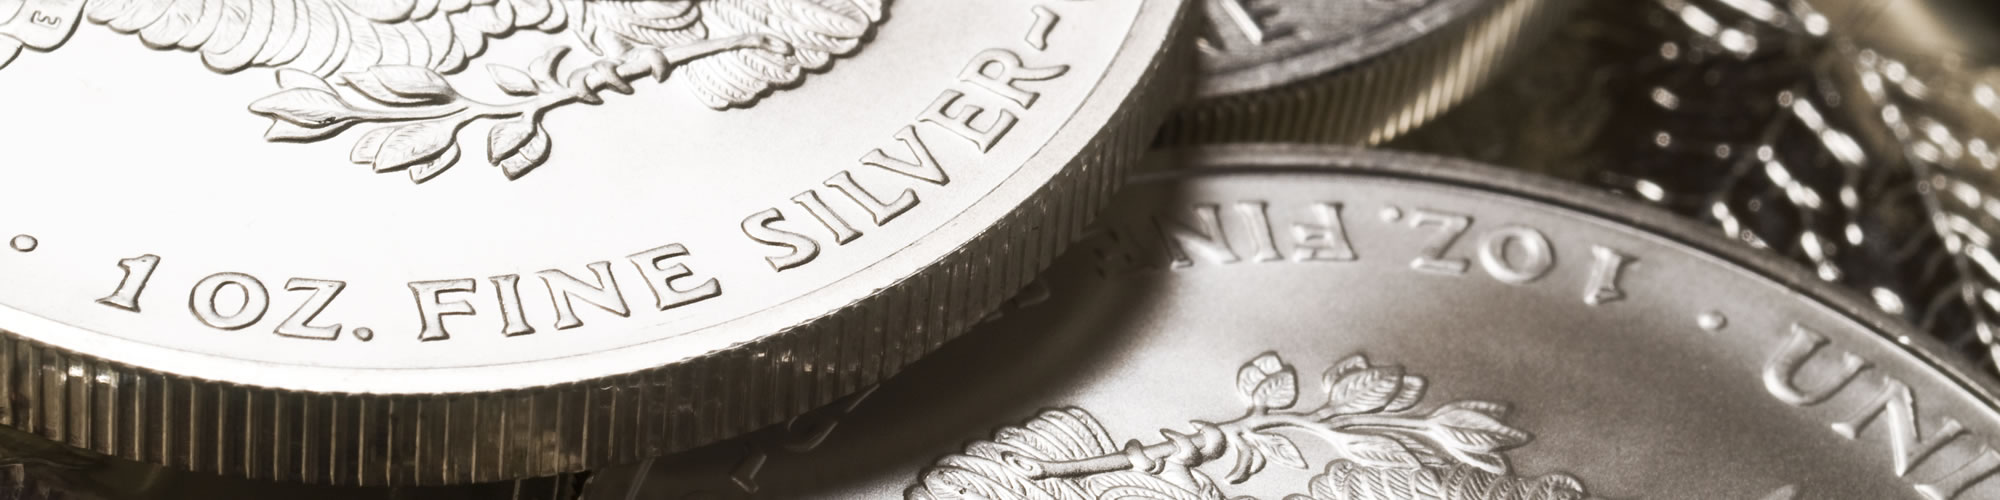 Silbermünzen Ankauf zu fairen Konditionen